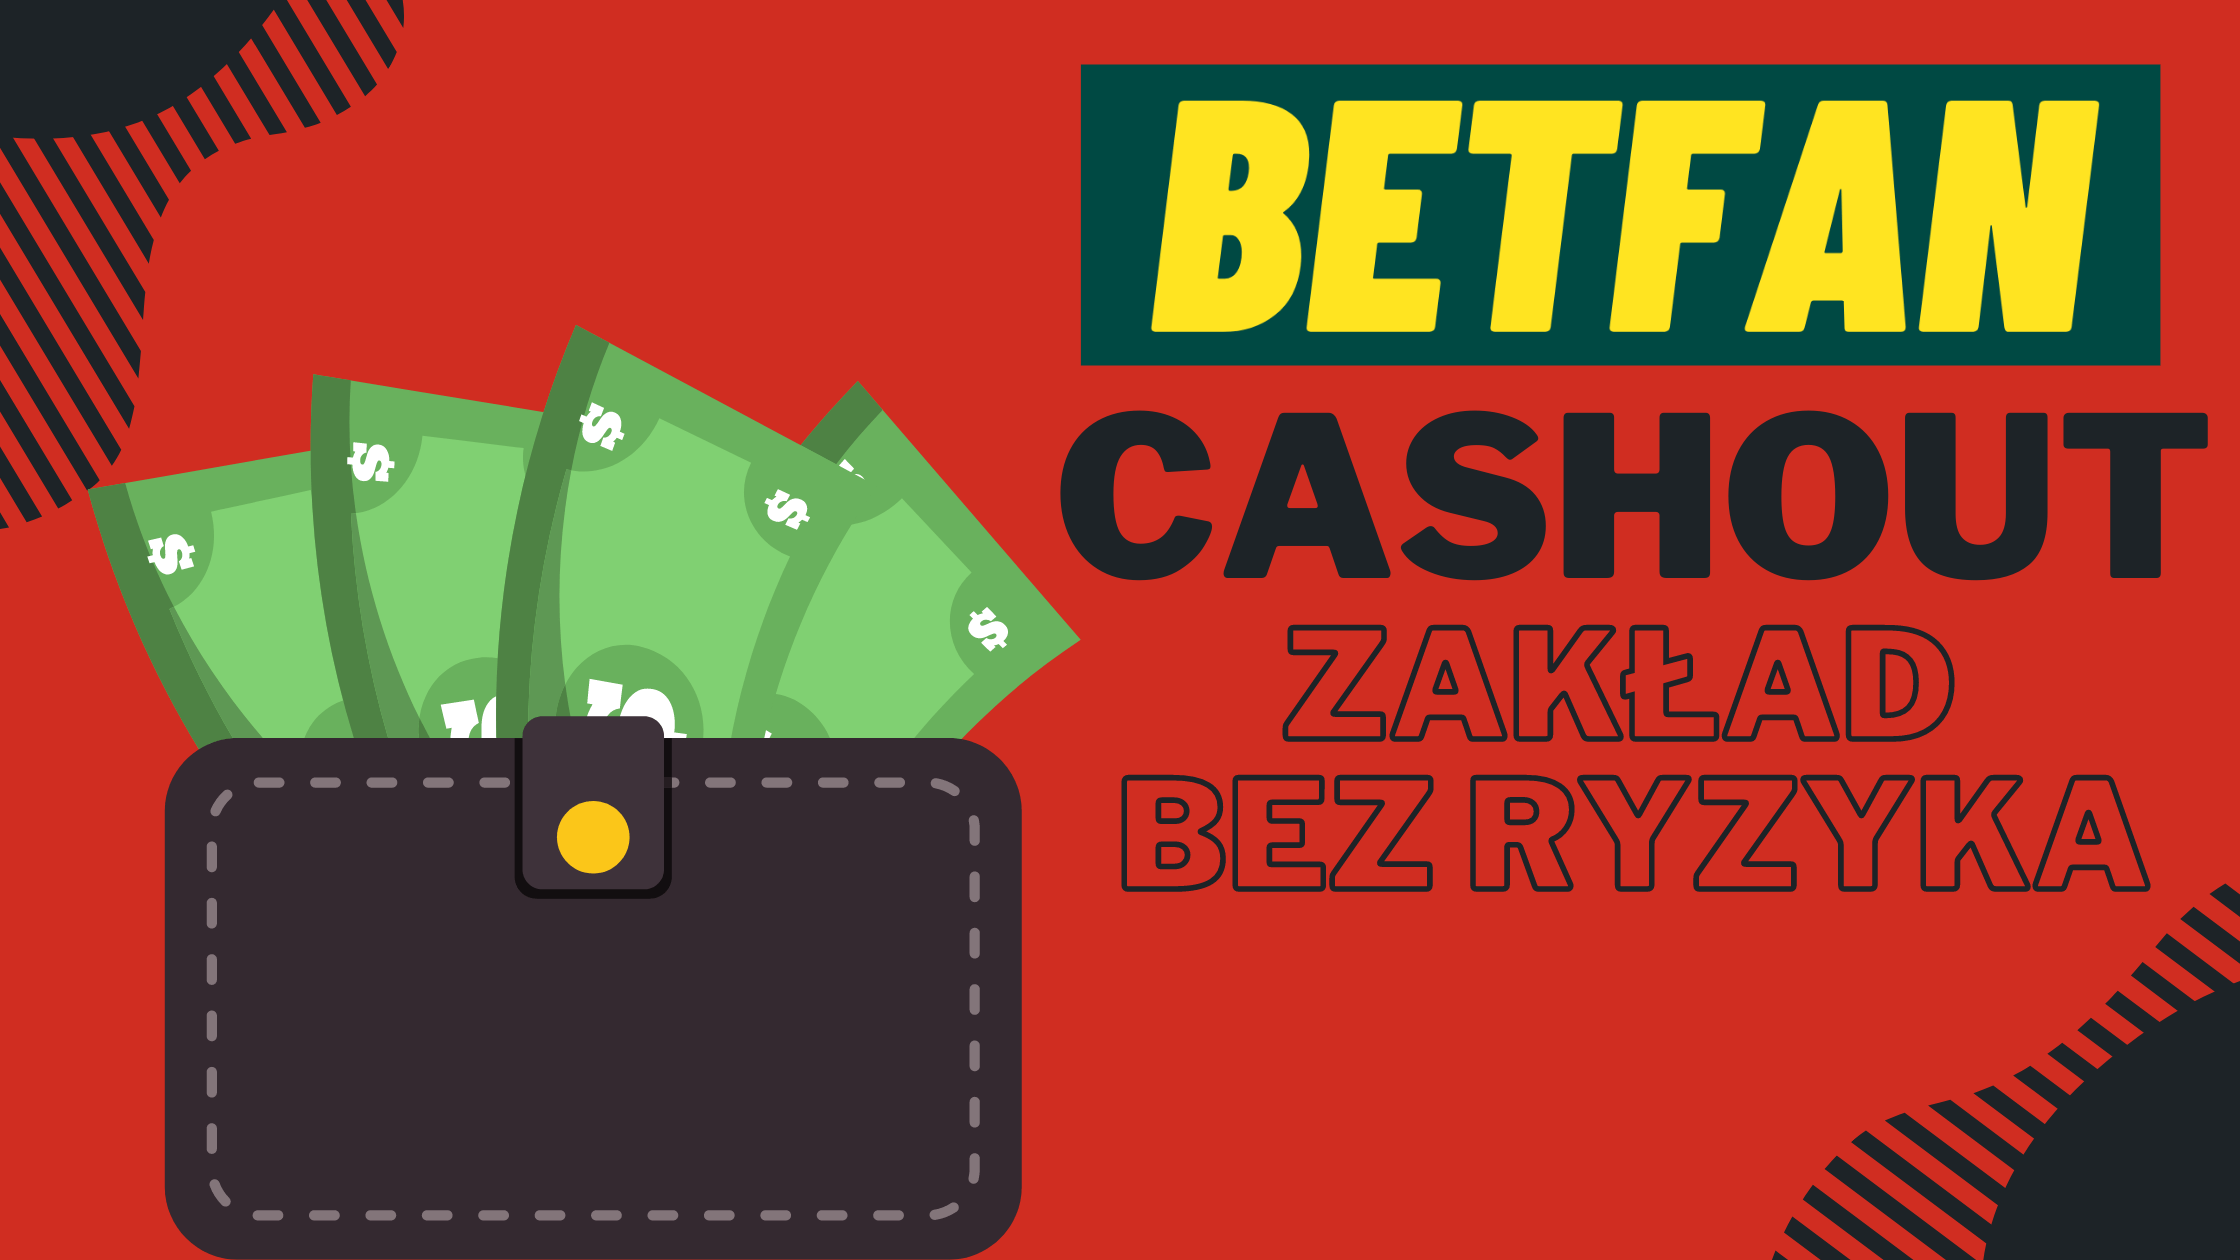 Promocja Betfan Cashout - zakład bez ryzyka